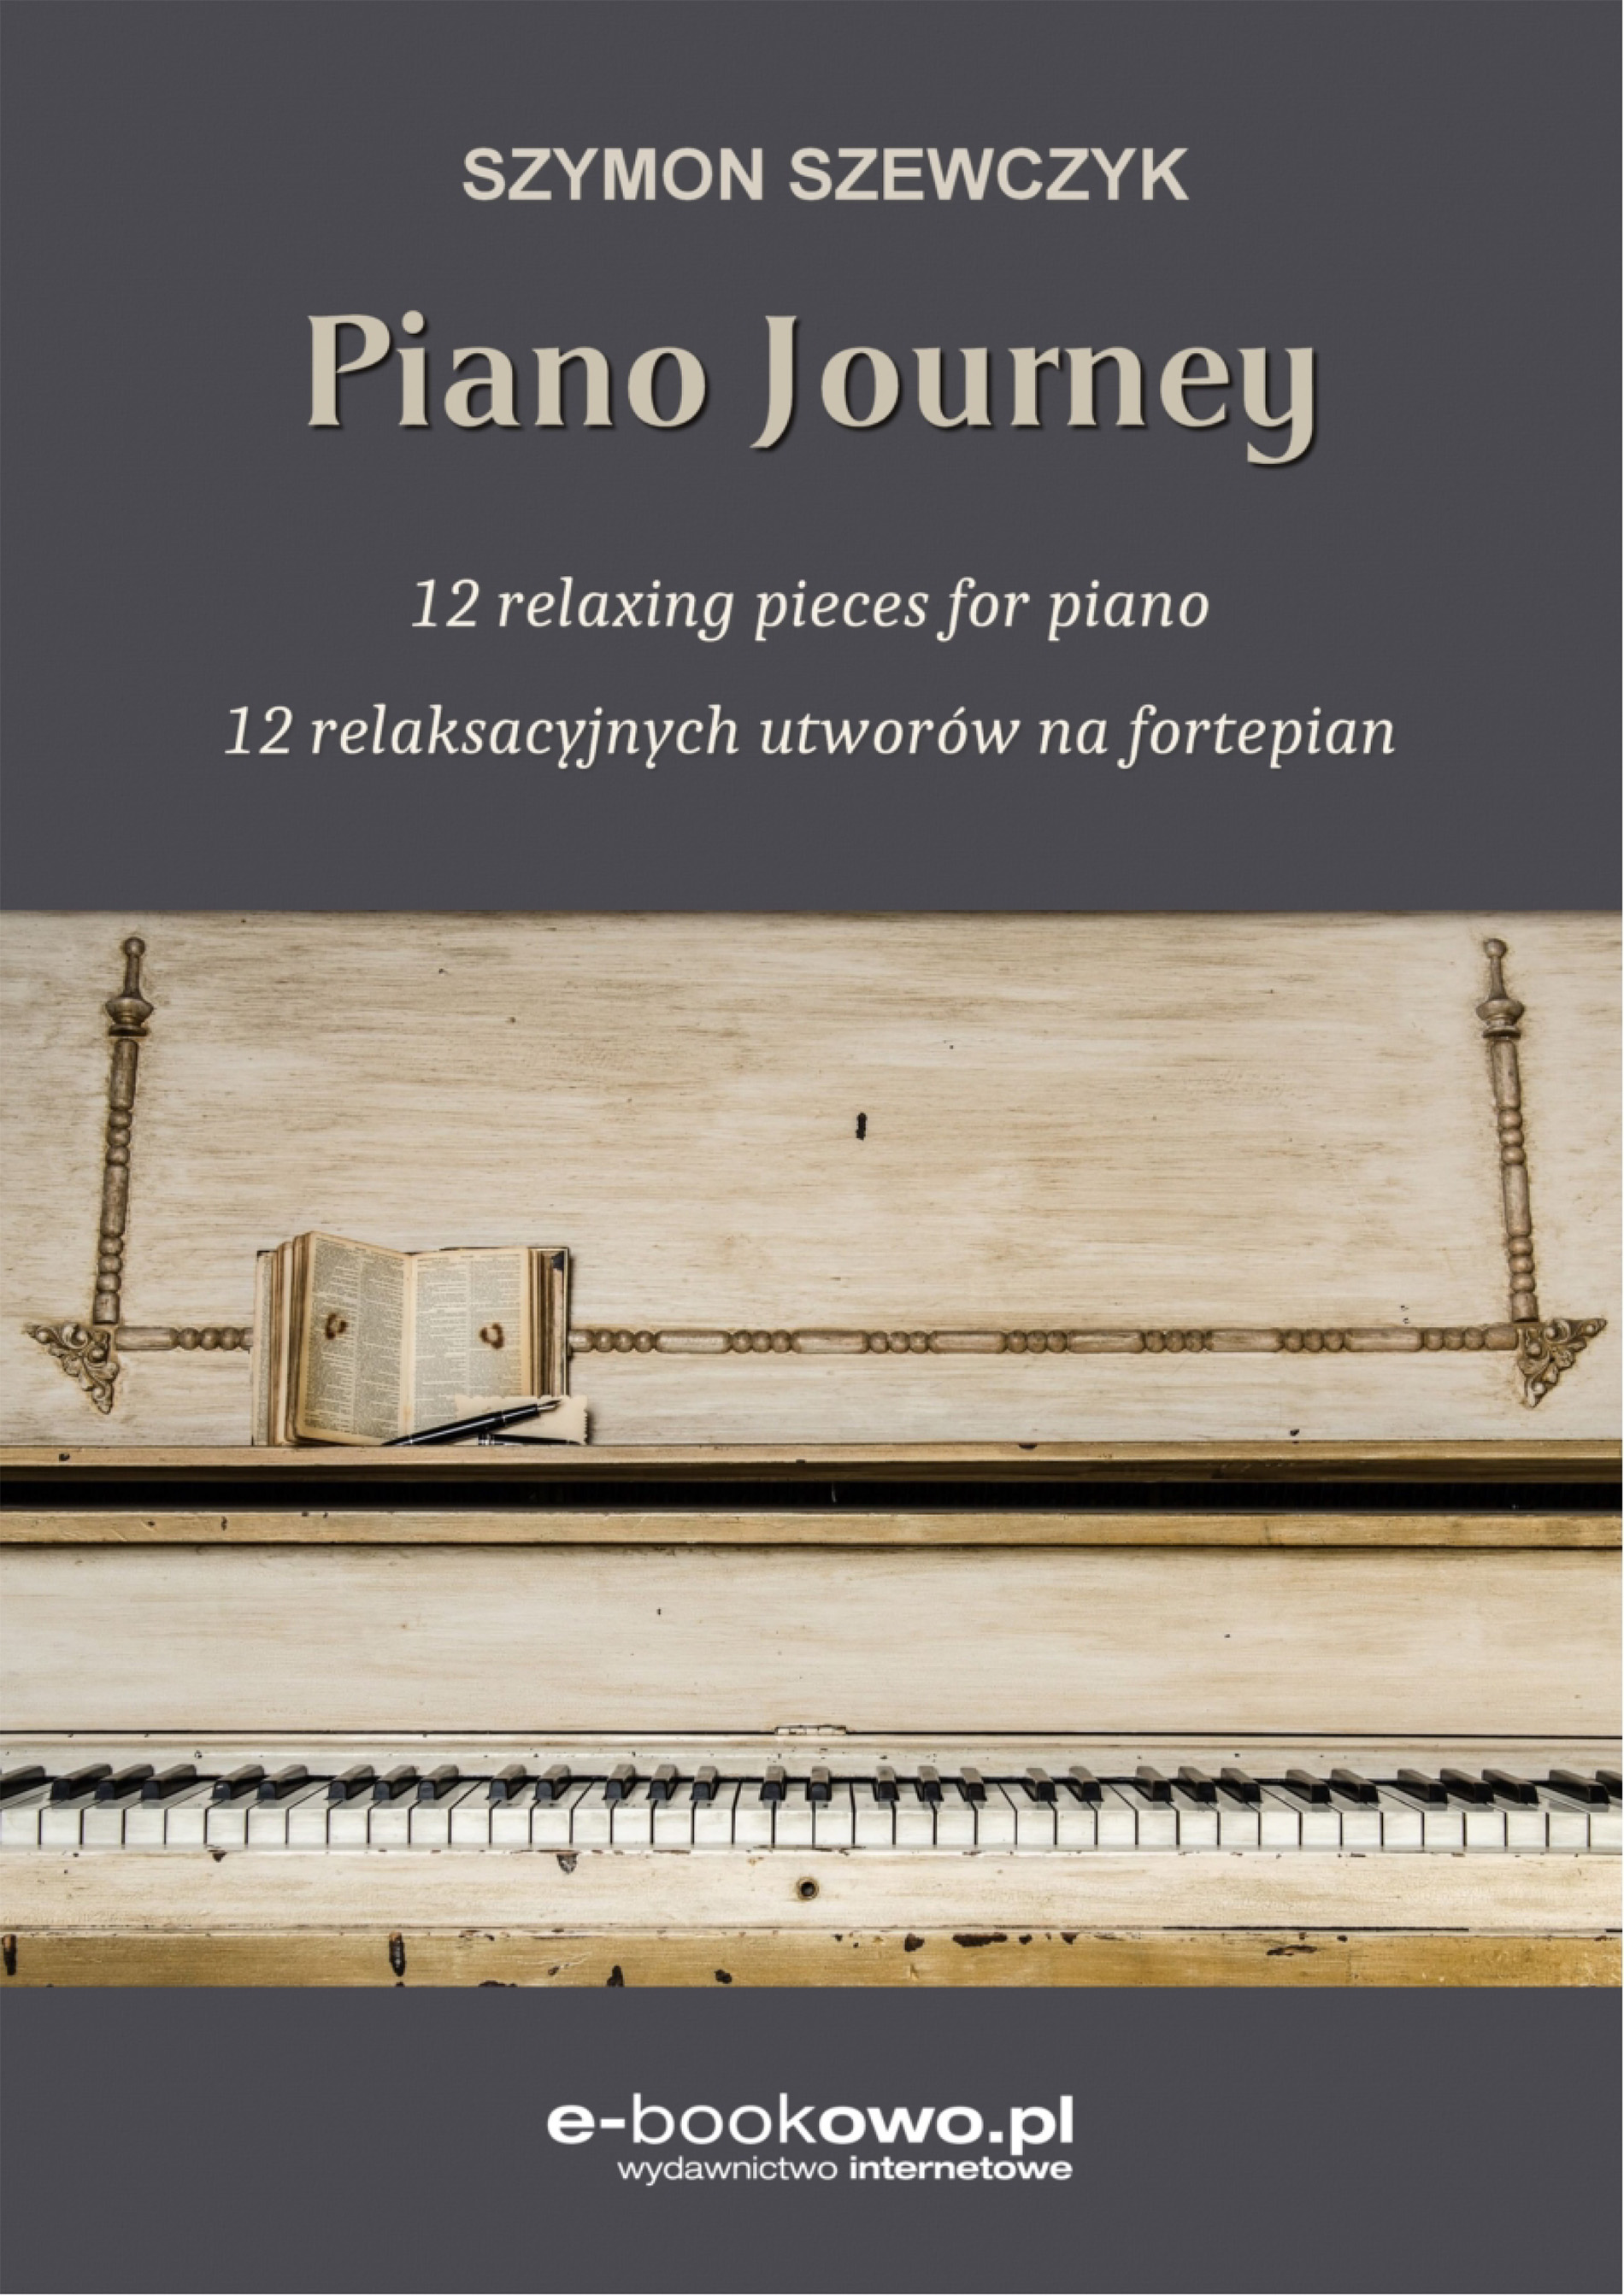 Piano journey